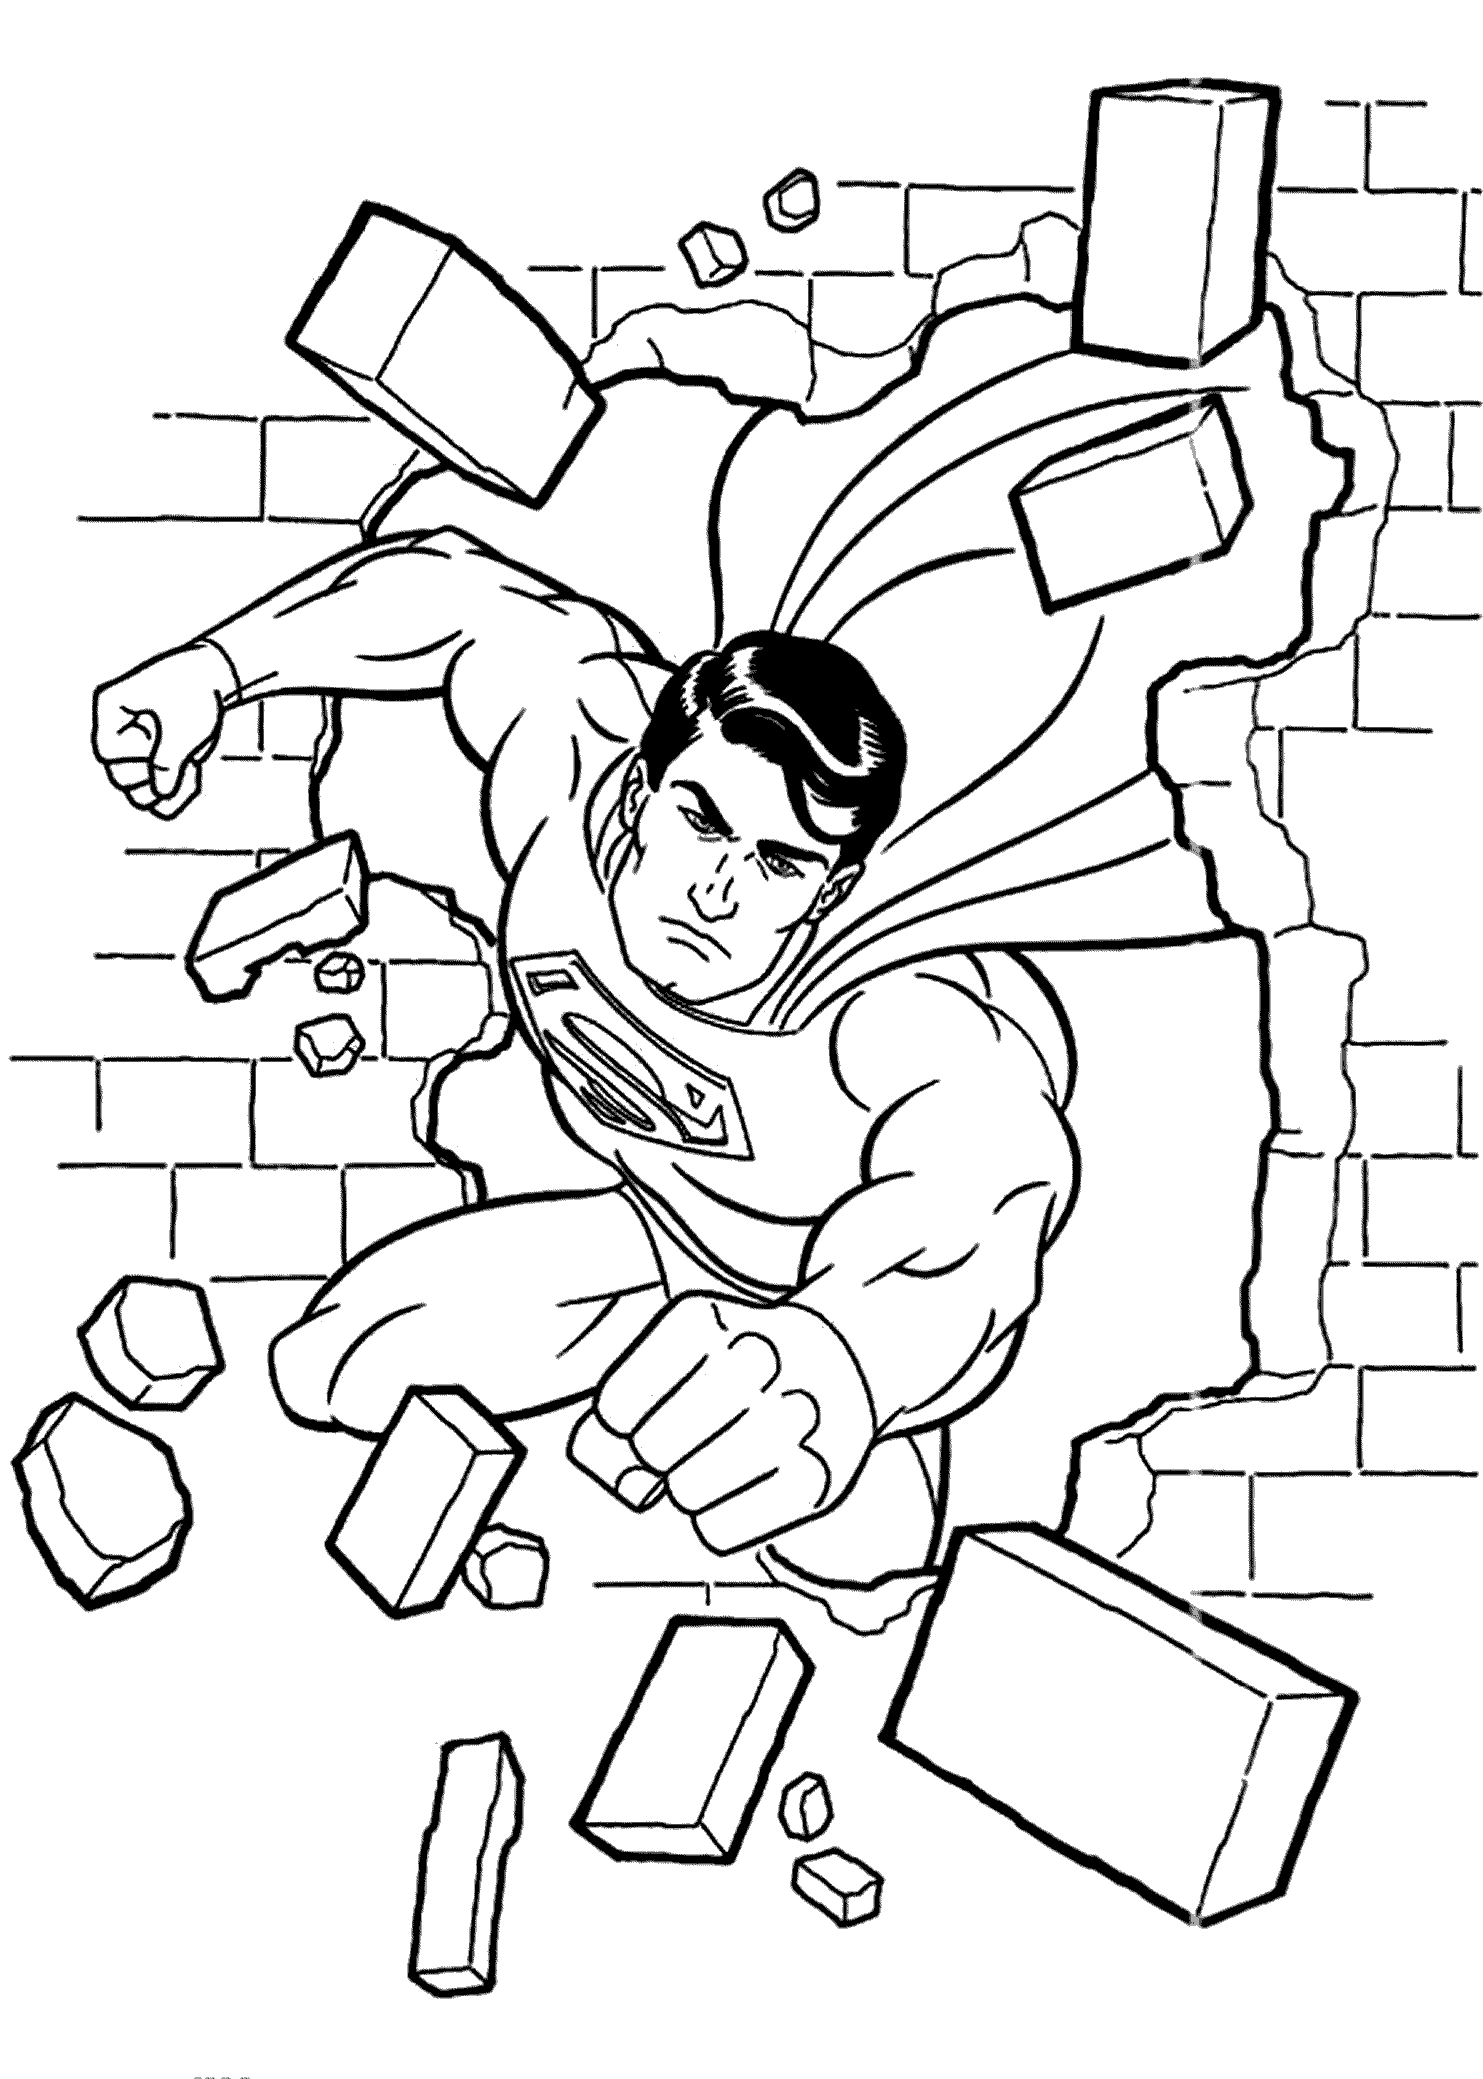 Tranh tô màu siêu nhân Superman phá tường